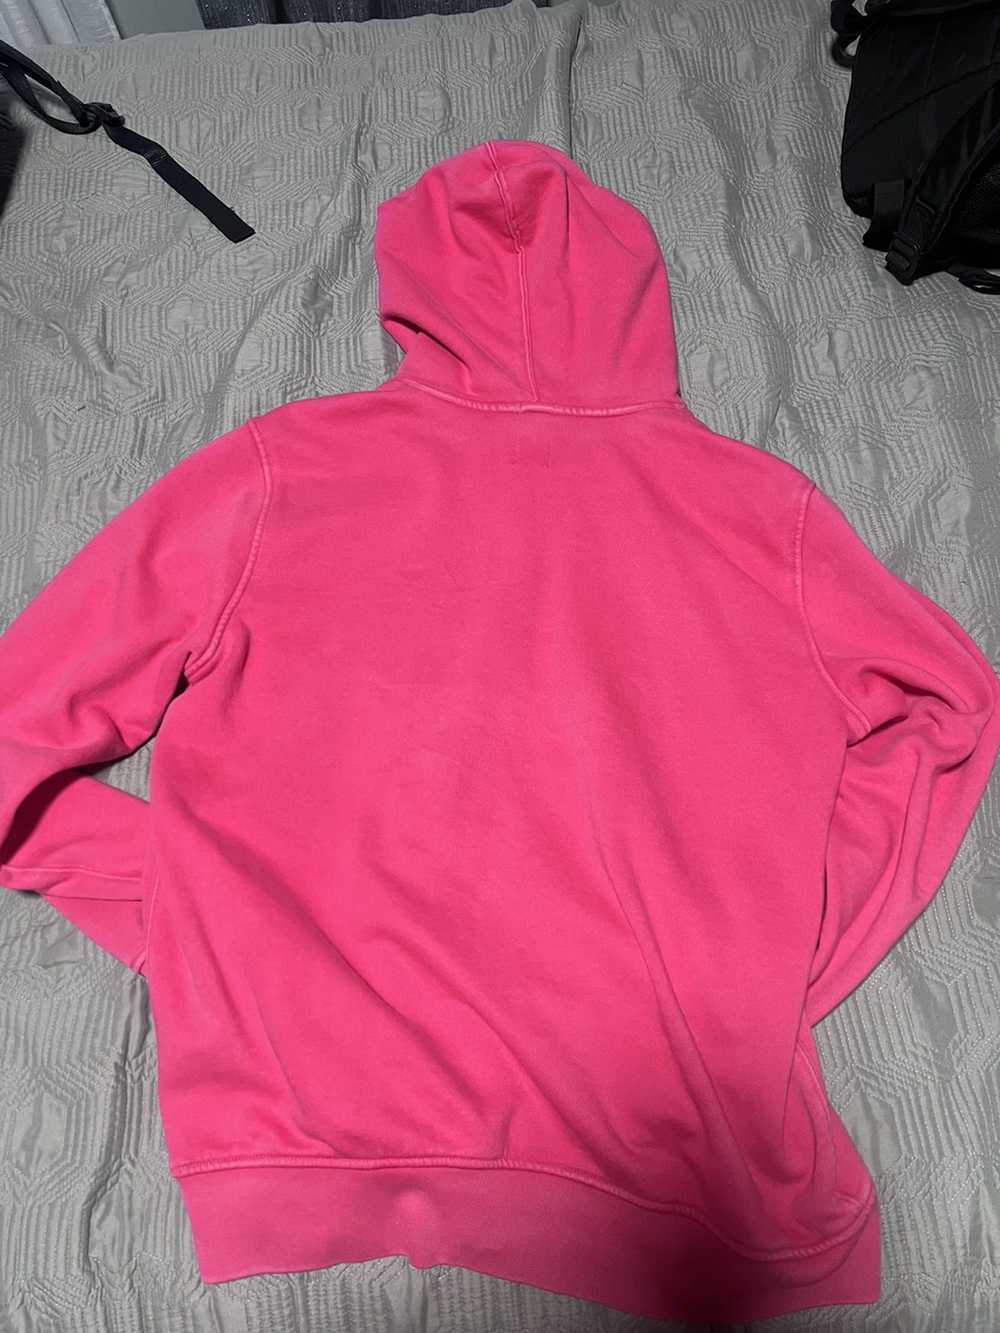 Gap Gap Heavy weight blank hoodie- pink - image 2